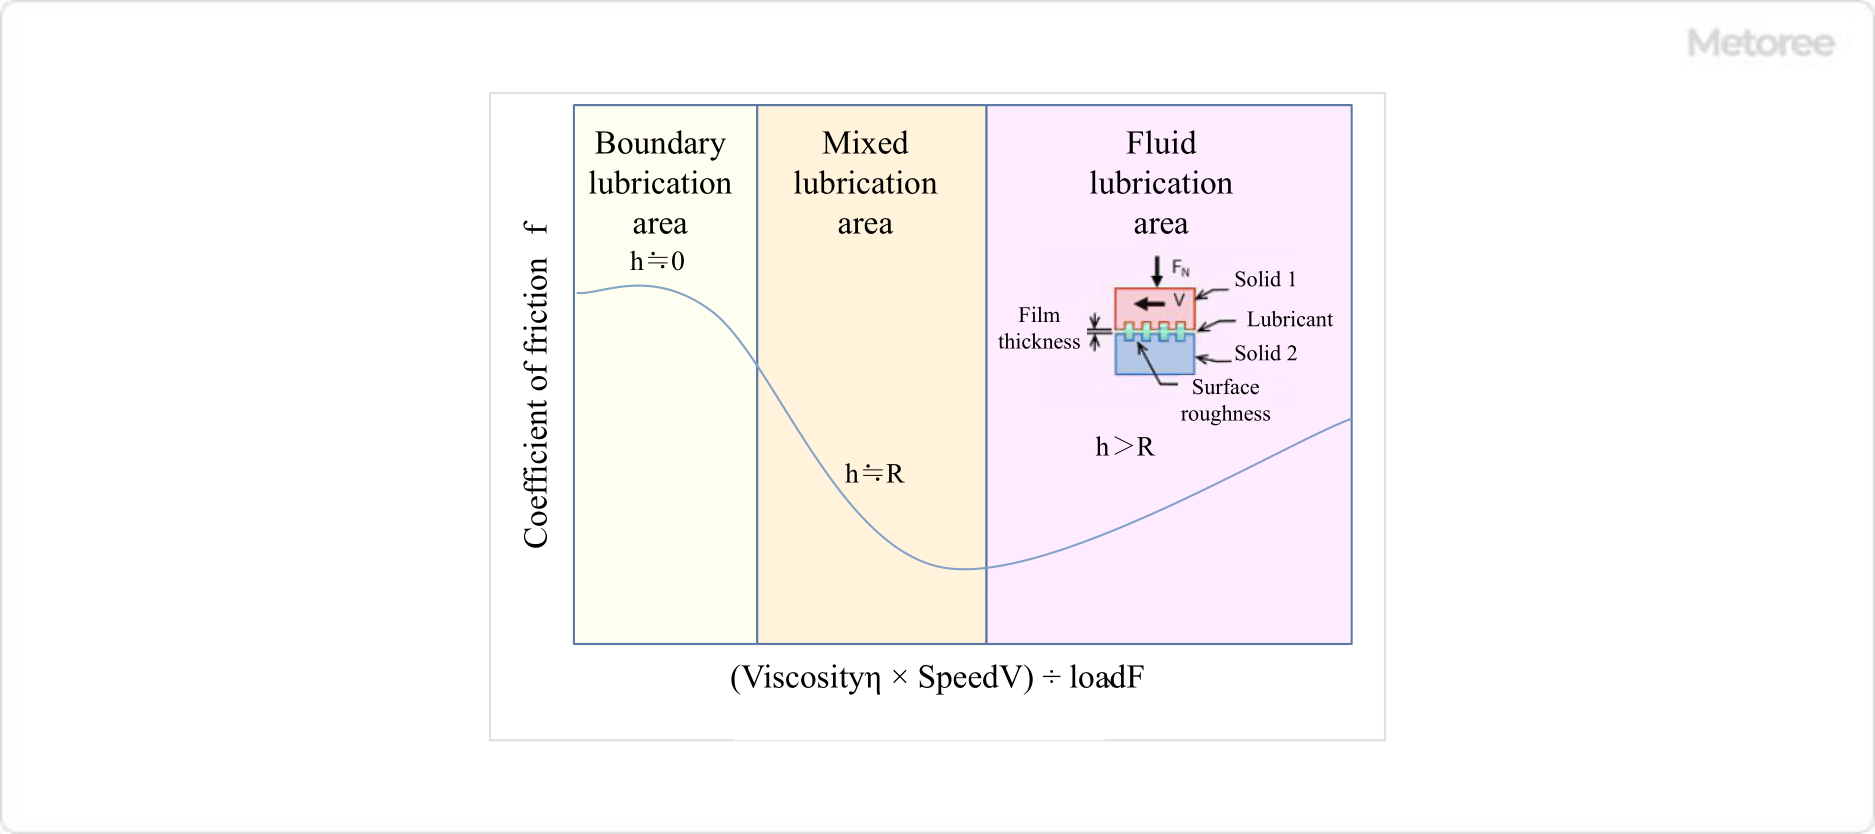 Figure 6. Trispec curve